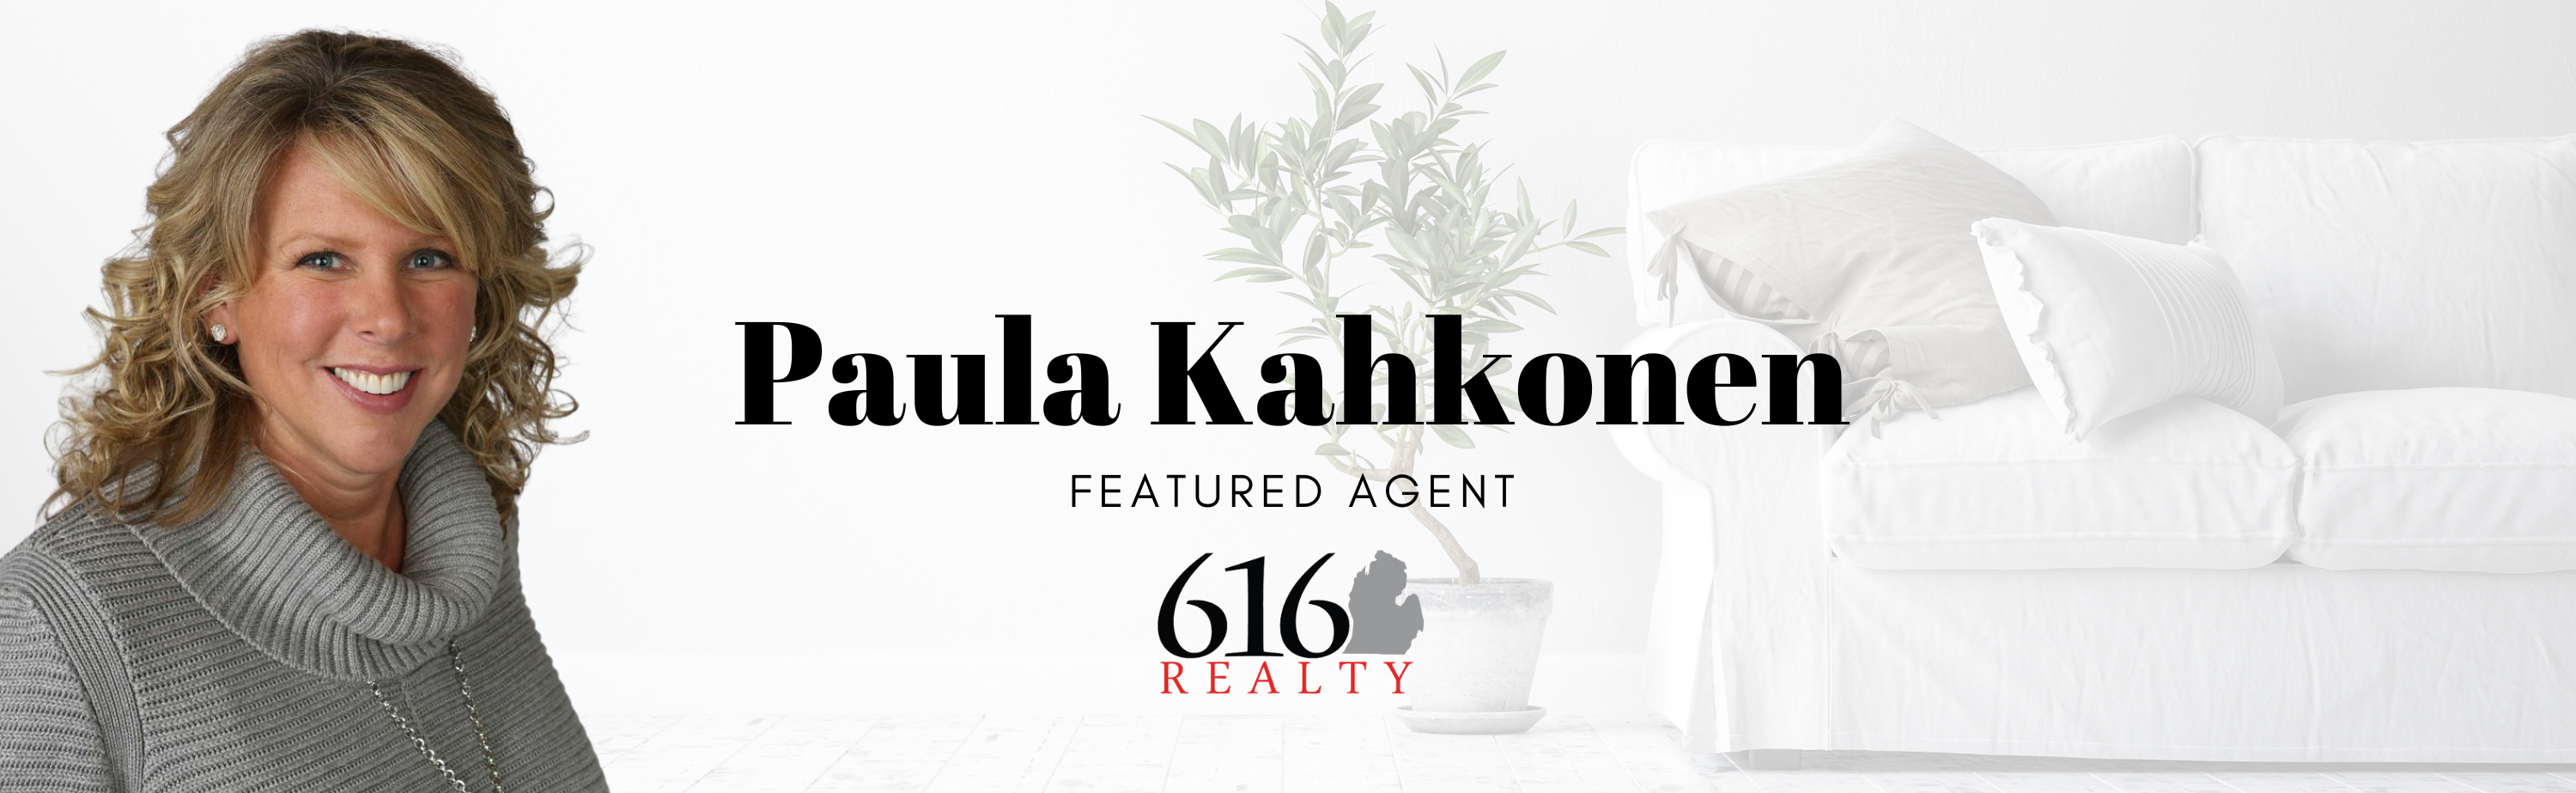 Paula Kahkonen - Featured Agent